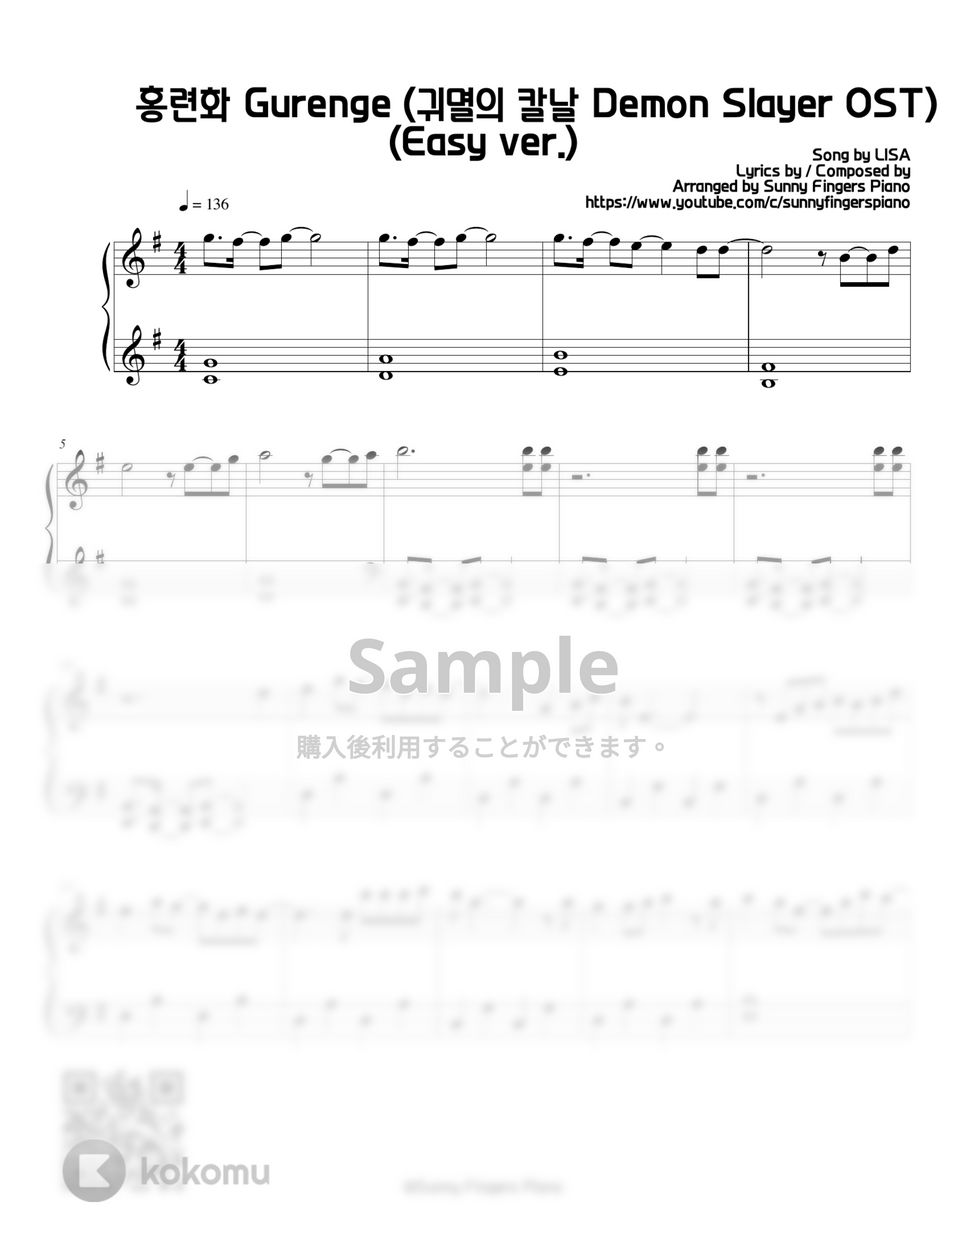 鬼滅の刃 - 紅蓮華 (Easy) by Sunny Fingers Piano